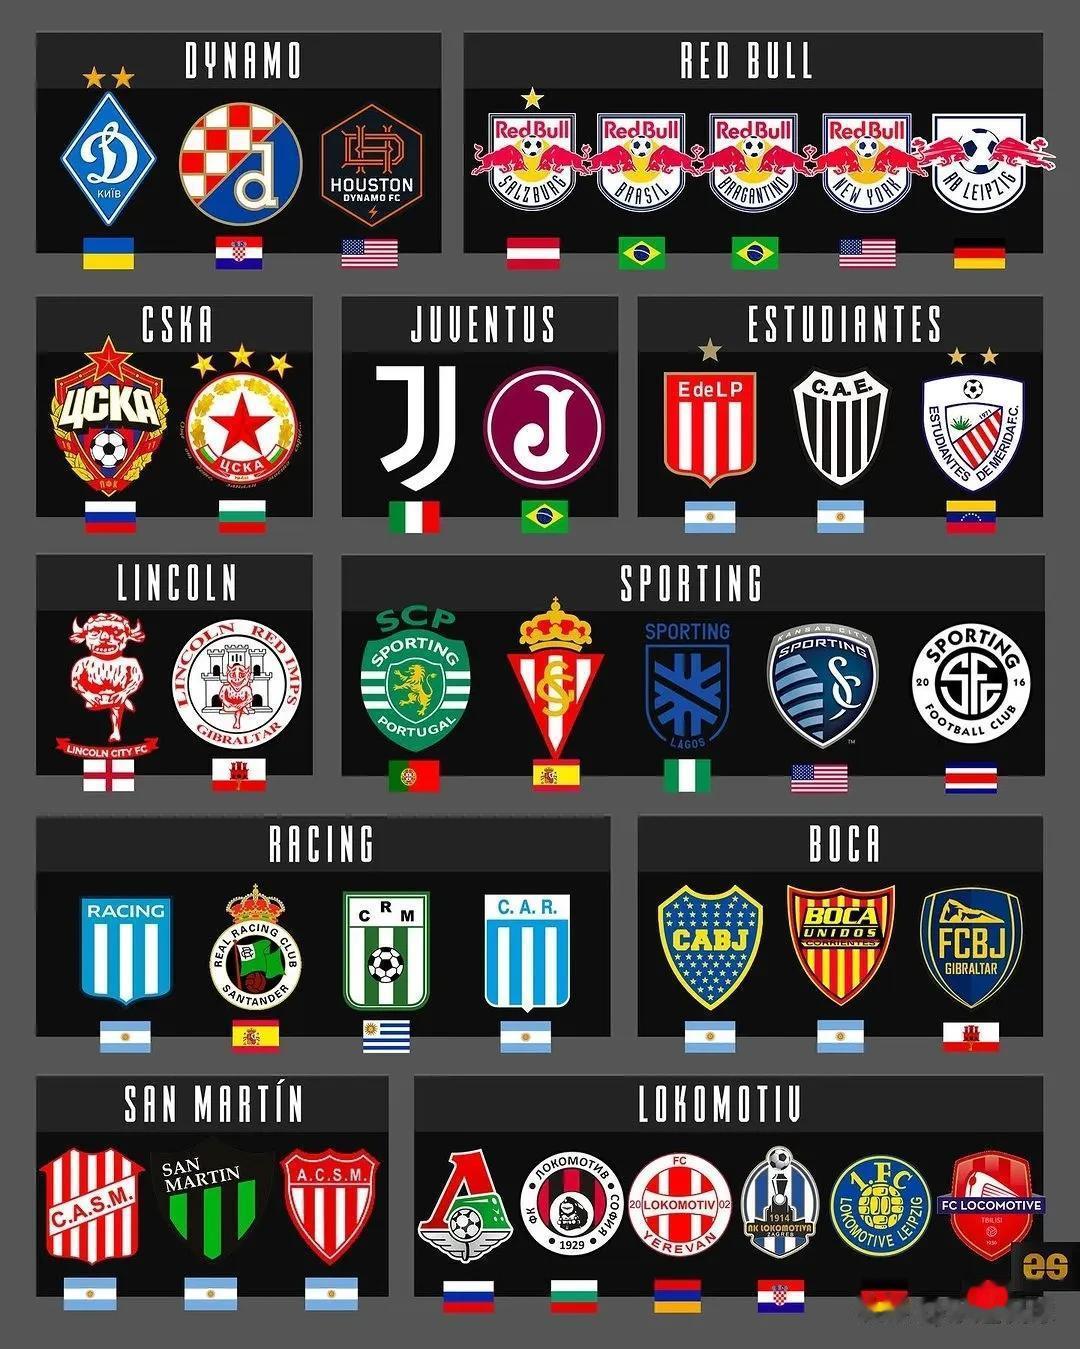 国际足坛中，重名的俱乐部有多少？厄瓜多尔也有叫巴塞罗那的俱乐部，乌拉圭也有叫利物(2)